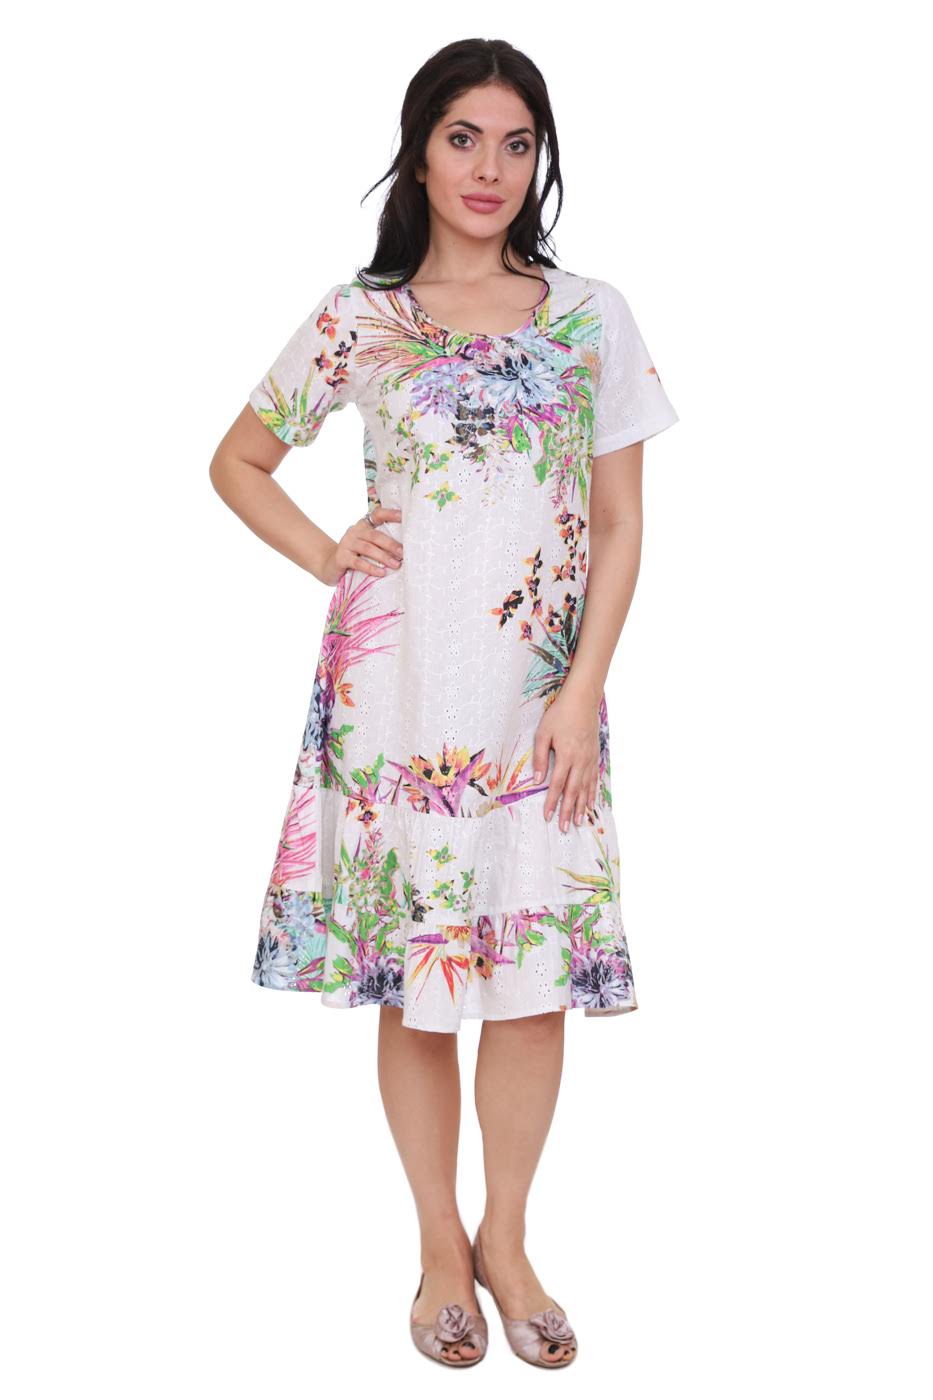 Платье Asshur Цвет: Белый, Мультиколор (46), размер {}{} gng461338 Платье Asshur Цвет: Белый, Мультиколор (46) - фото 1